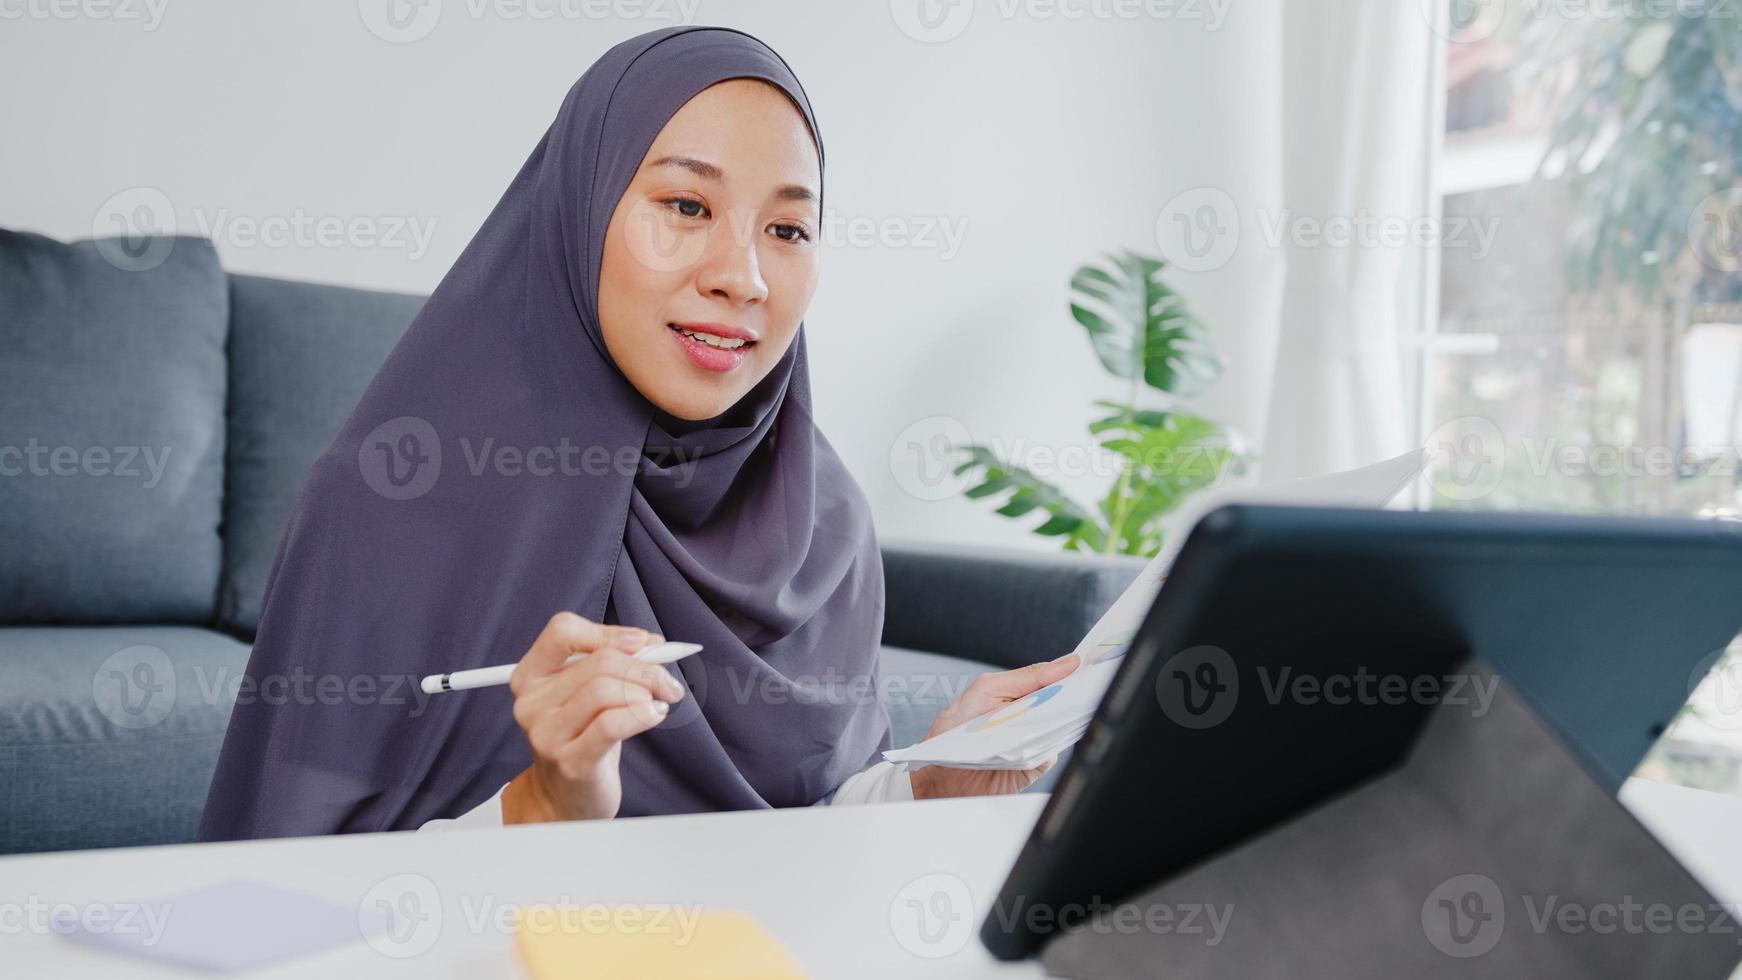 Asia dama musulmana usa pañuelo en la cabeza tableta de uso casual hable con sus colegas sobre el informe de venta en una videollamada de conferencia mientras trabaja desde su casa en la sala de estar. distanciamiento social, cuarentena por coronavirus. foto